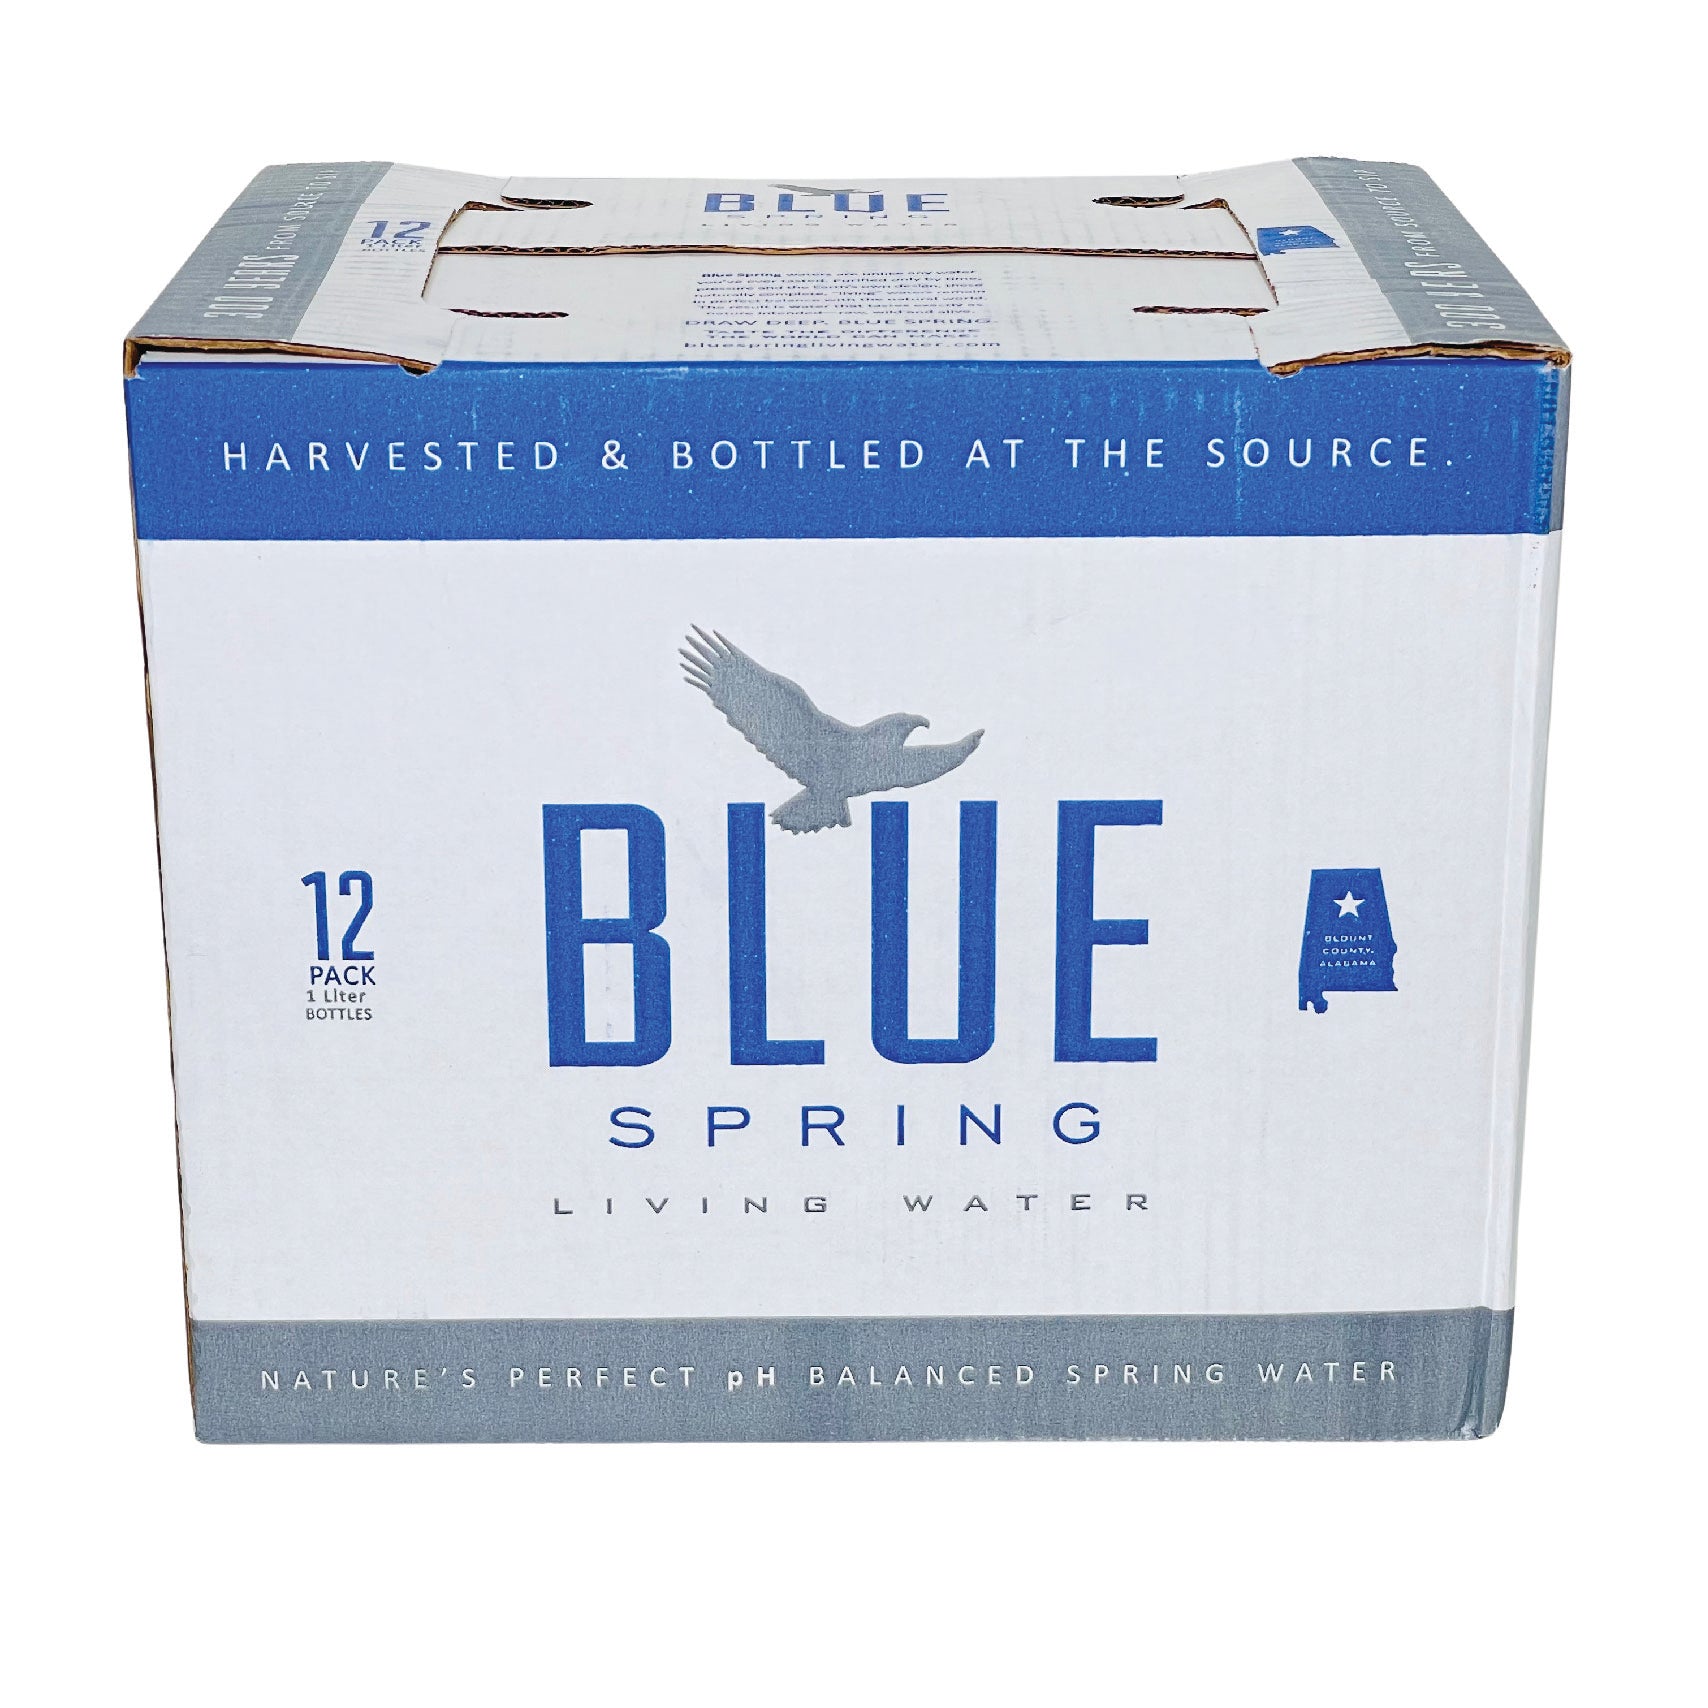 Evian Natural Spring Water- 1L (33.8 Fl oz) (12 Bottles per Case